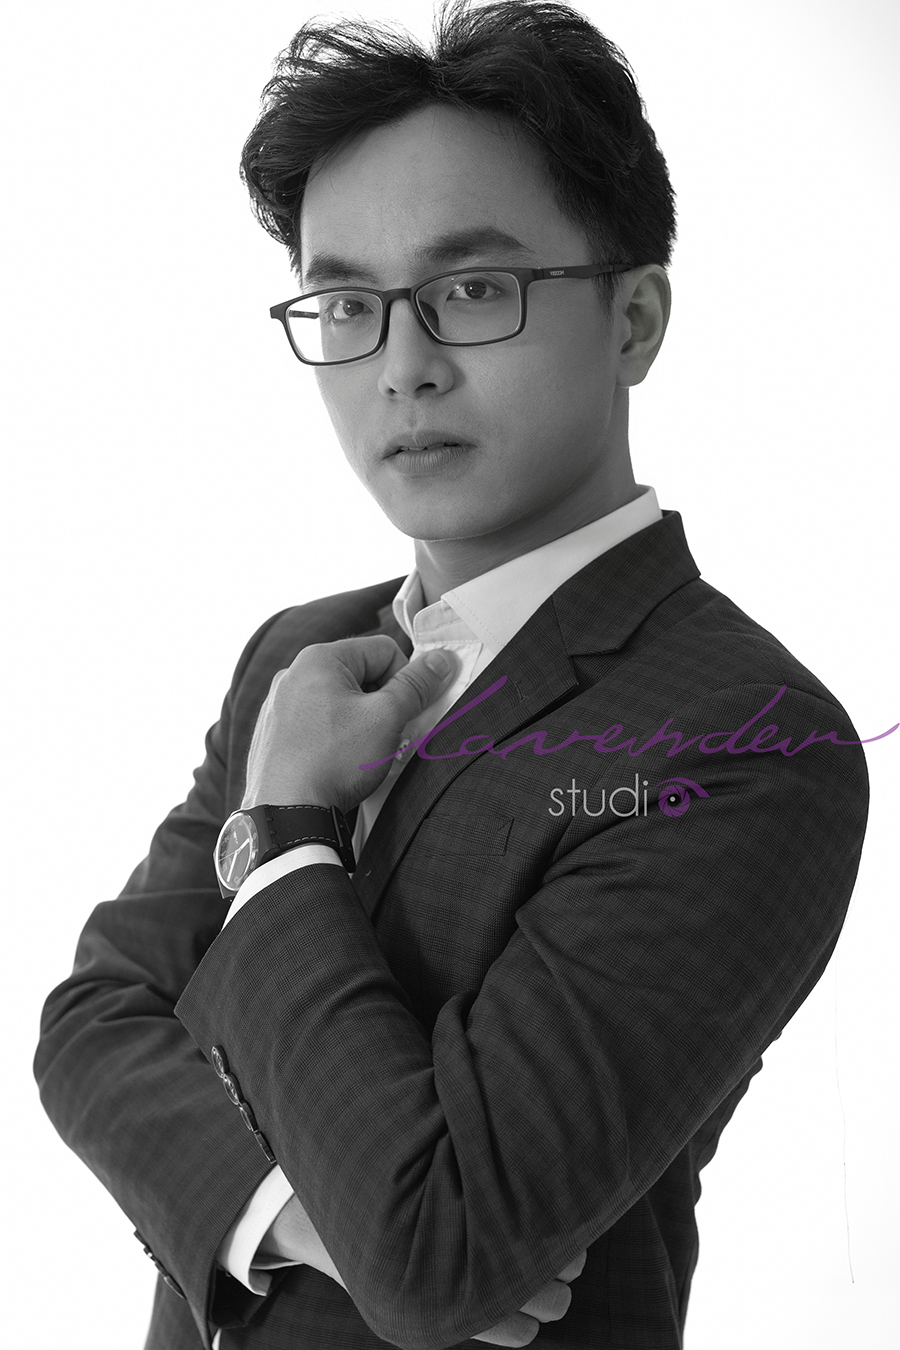 Studio chuyên chụp ảnh profile cá nhân làm quảng cáo ở Đà Nẵng